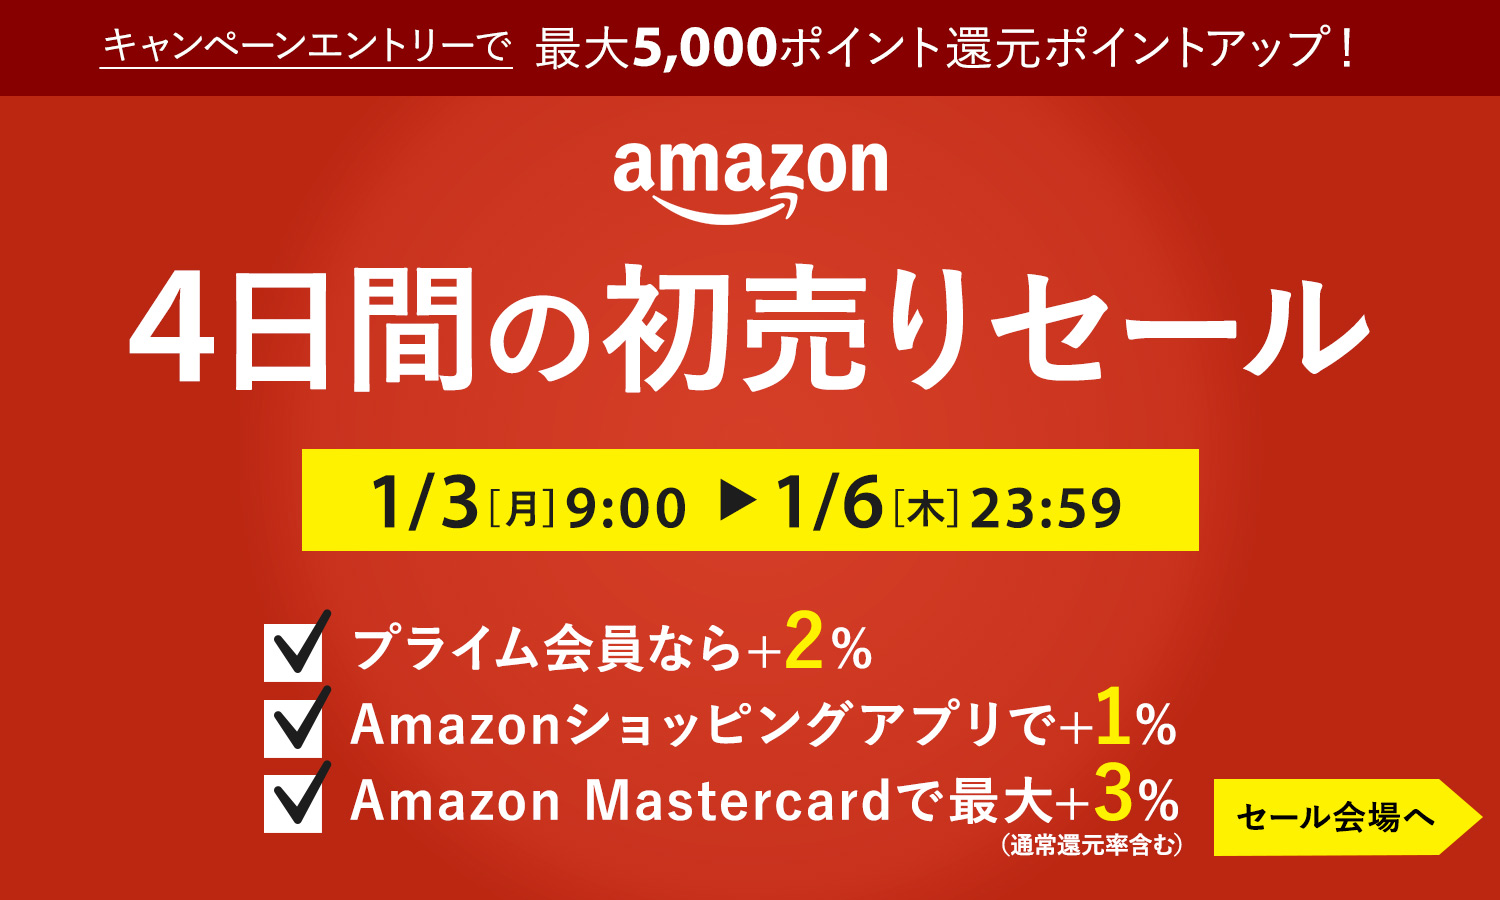 2022年 Amazon4日間の初売りセール【1/3〜1/6】